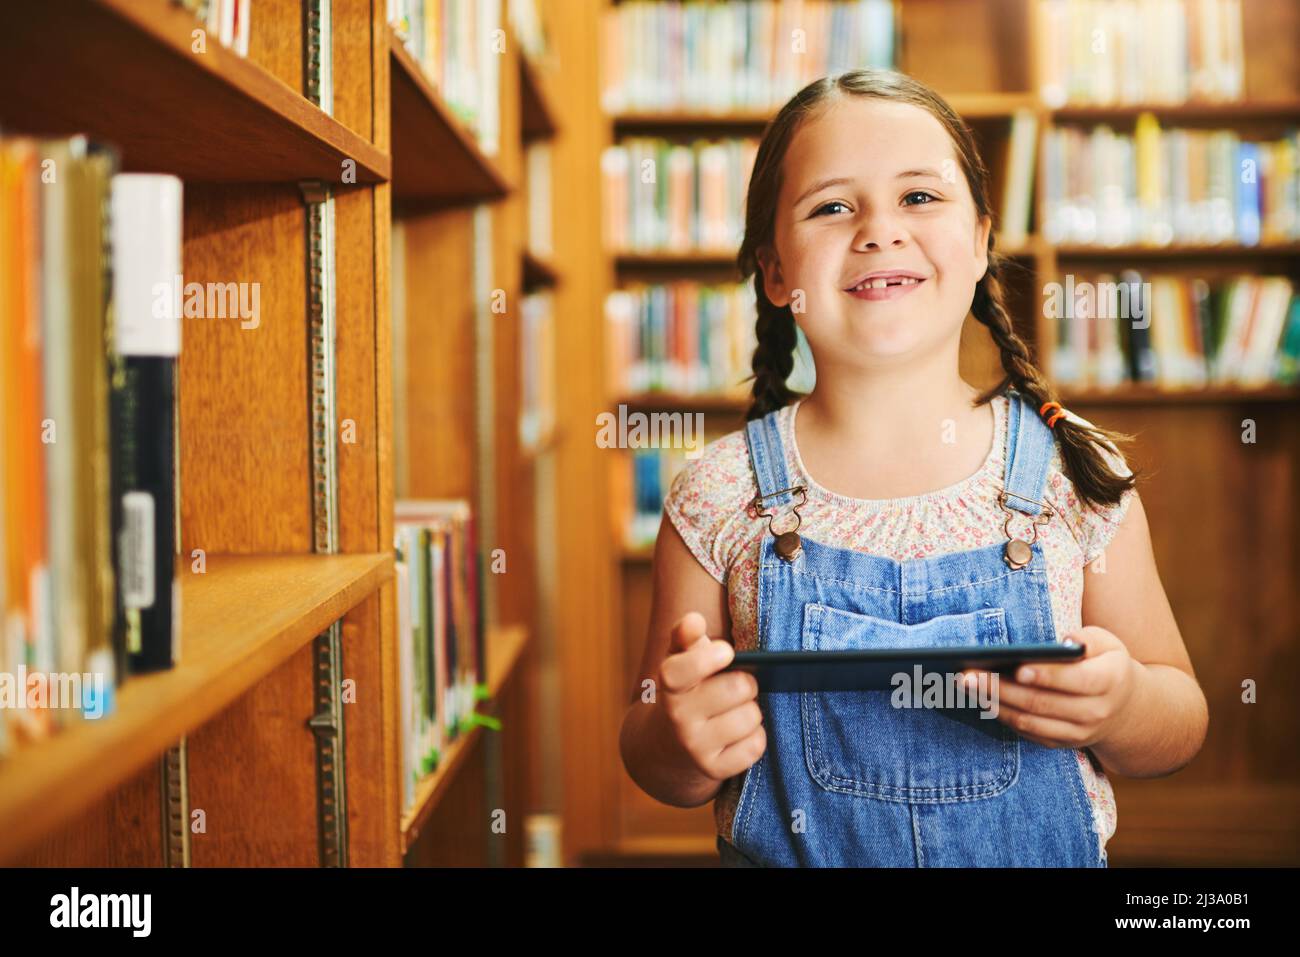 Questo è quasi come un libro. Ritratto di una ragazza allegra che naviga su un tablet digitale mentre si trova all'interno di una biblioteca durante il giorno. Foto Stock